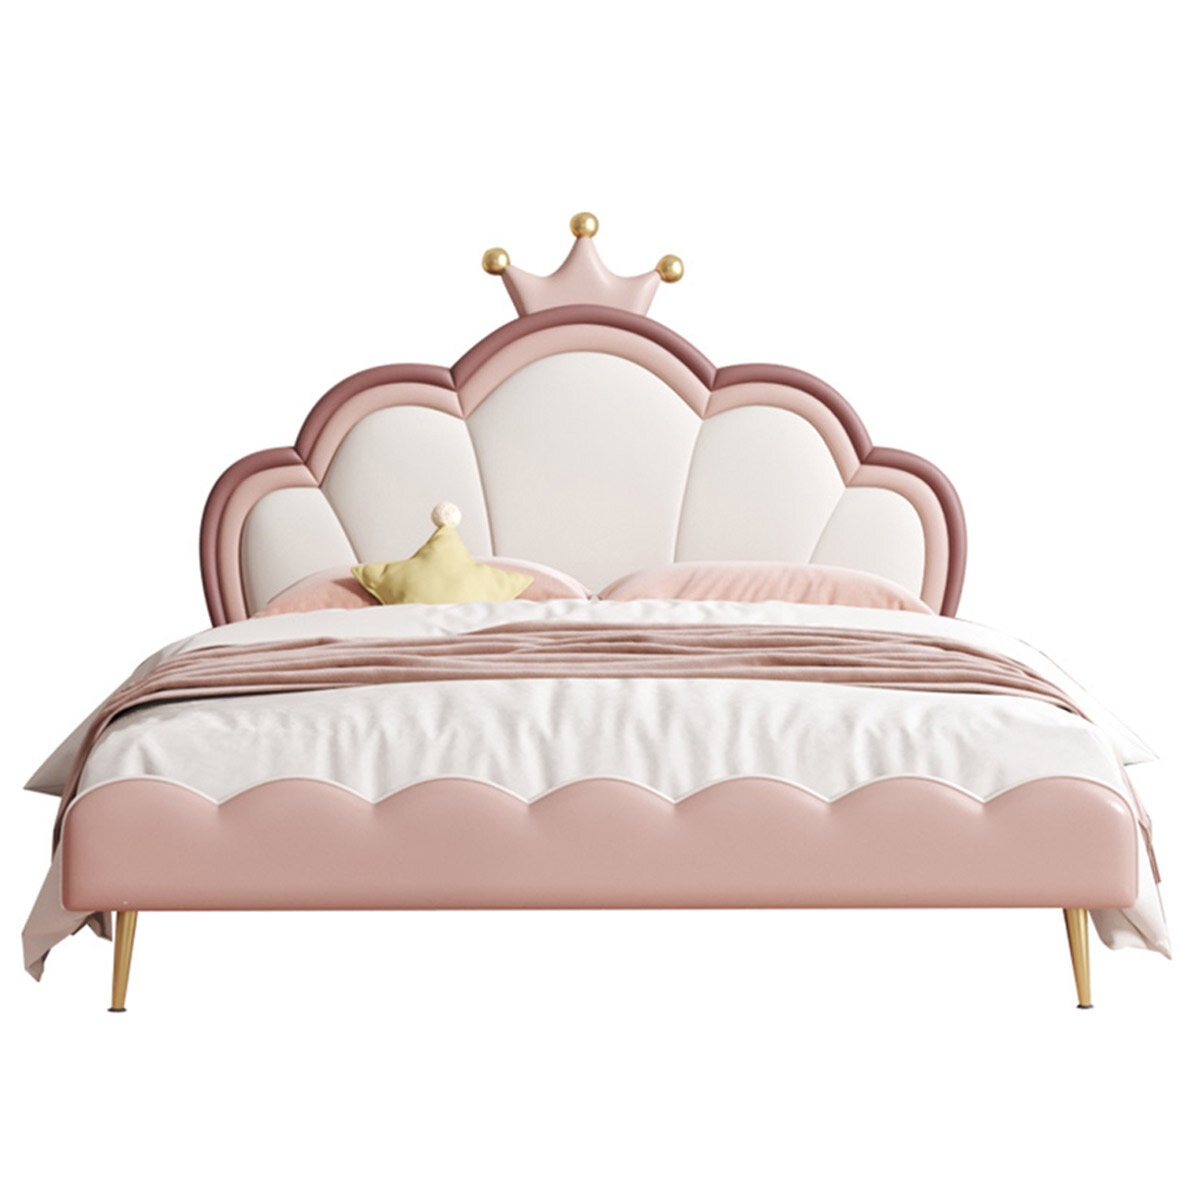 Shell Princess Bed